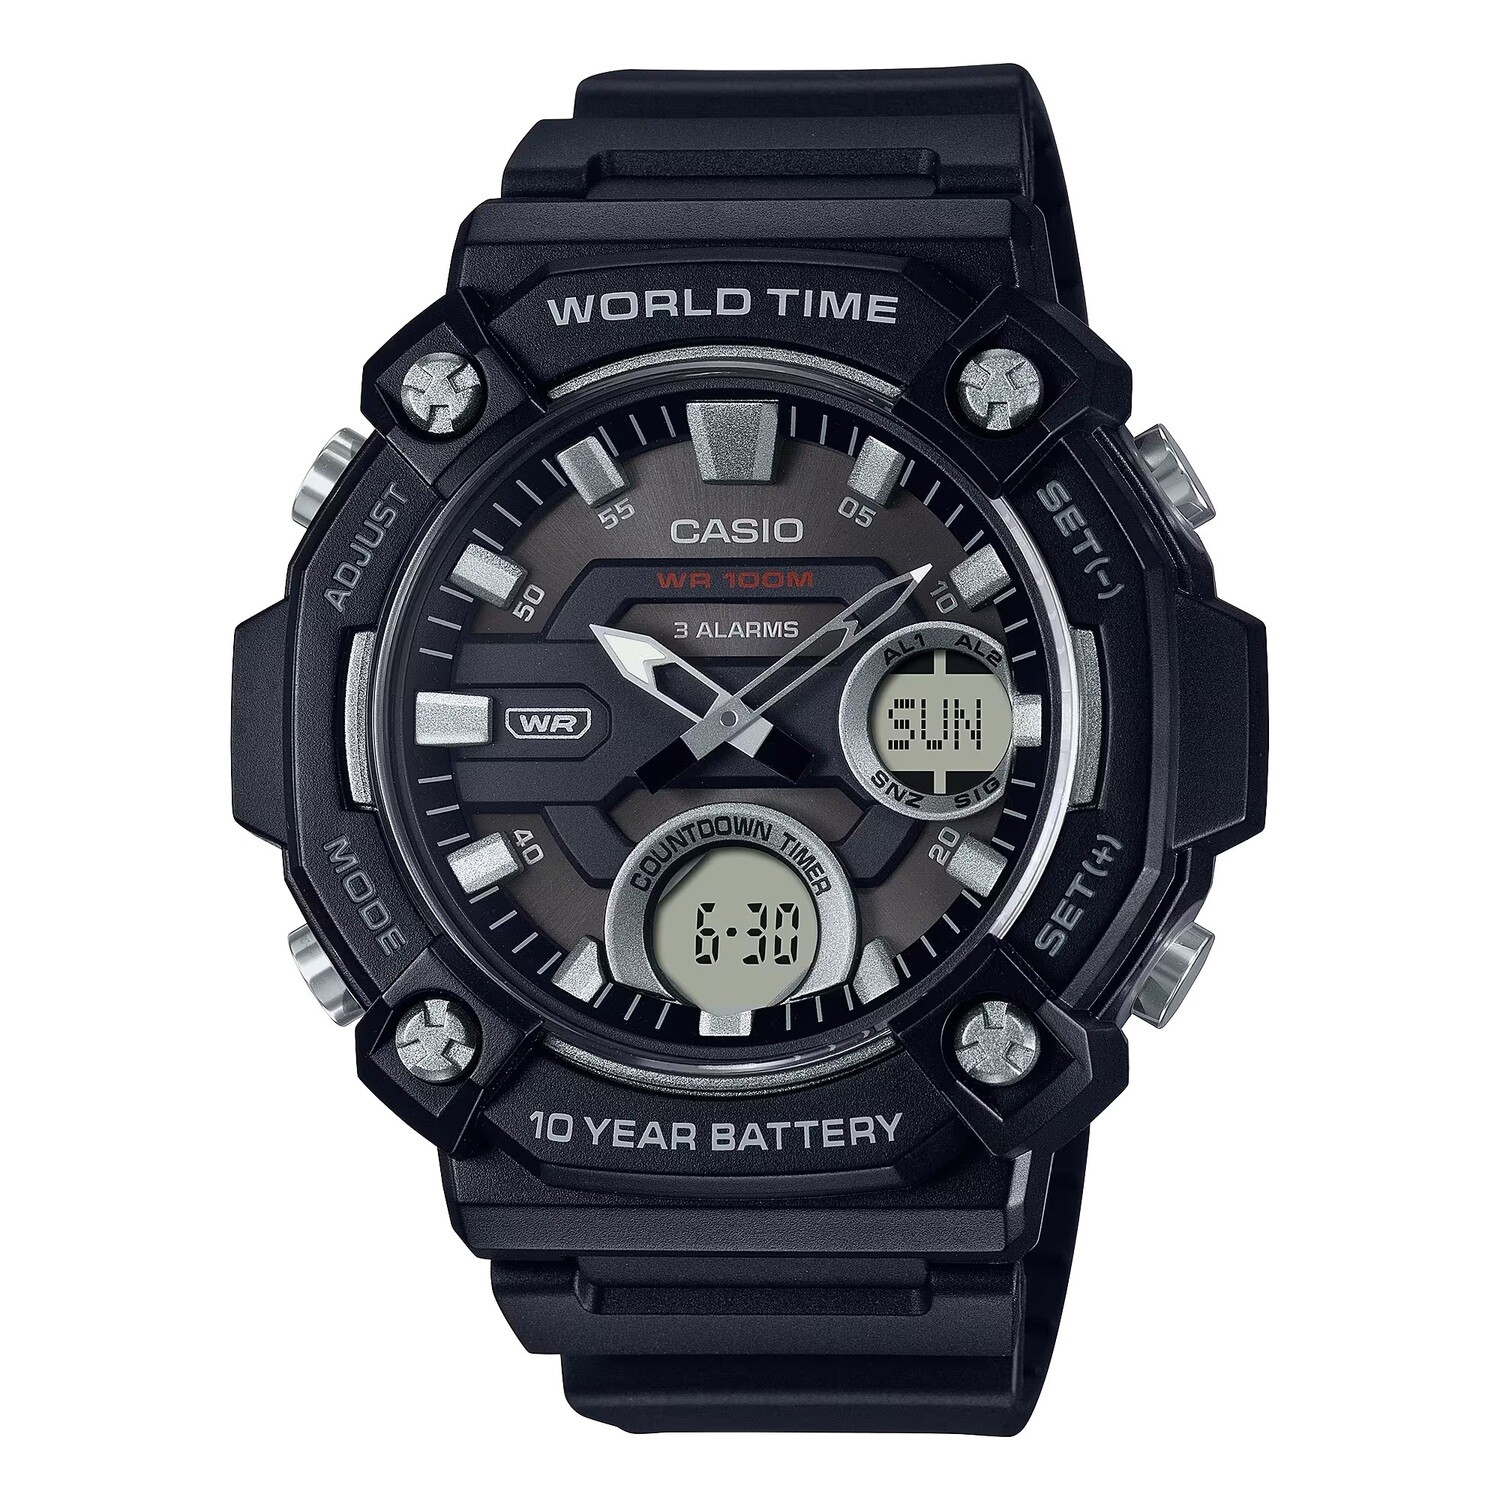 ​Reloj deportivo hombre Casio AEQ-120W-1AV 52.2mm 100m WR 3 alarmas Hora Mundial 10 años batería